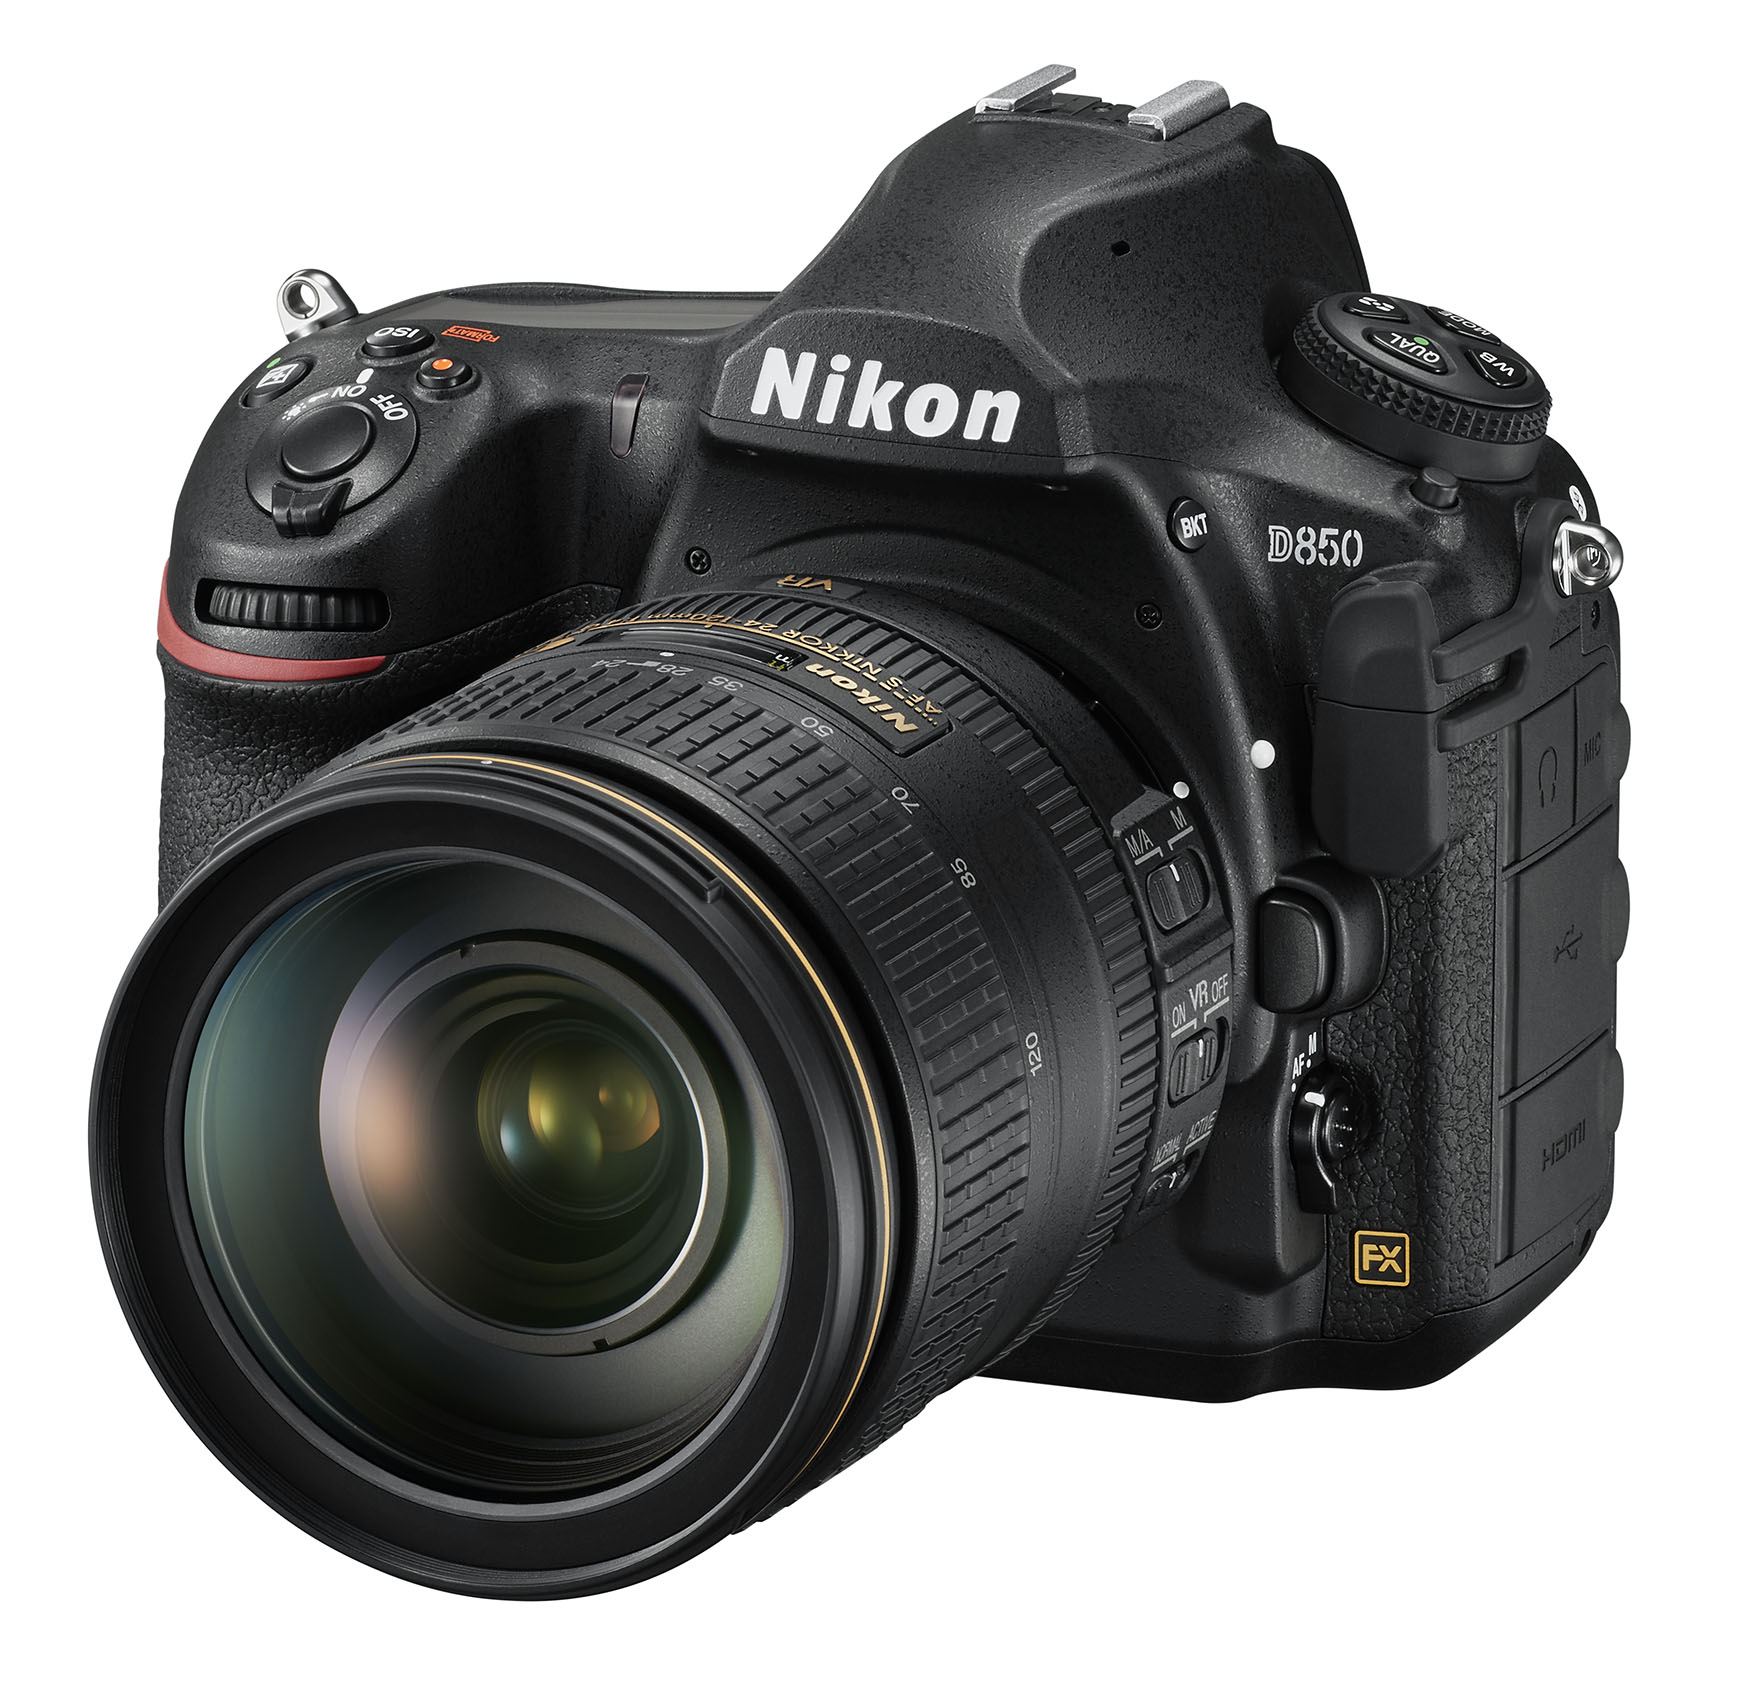 Nikon D850 kit 24-120mm VR (Mới 100%) - Bảo hành chính hãng VIC-VN 01 năm trên toàn quốc Cover